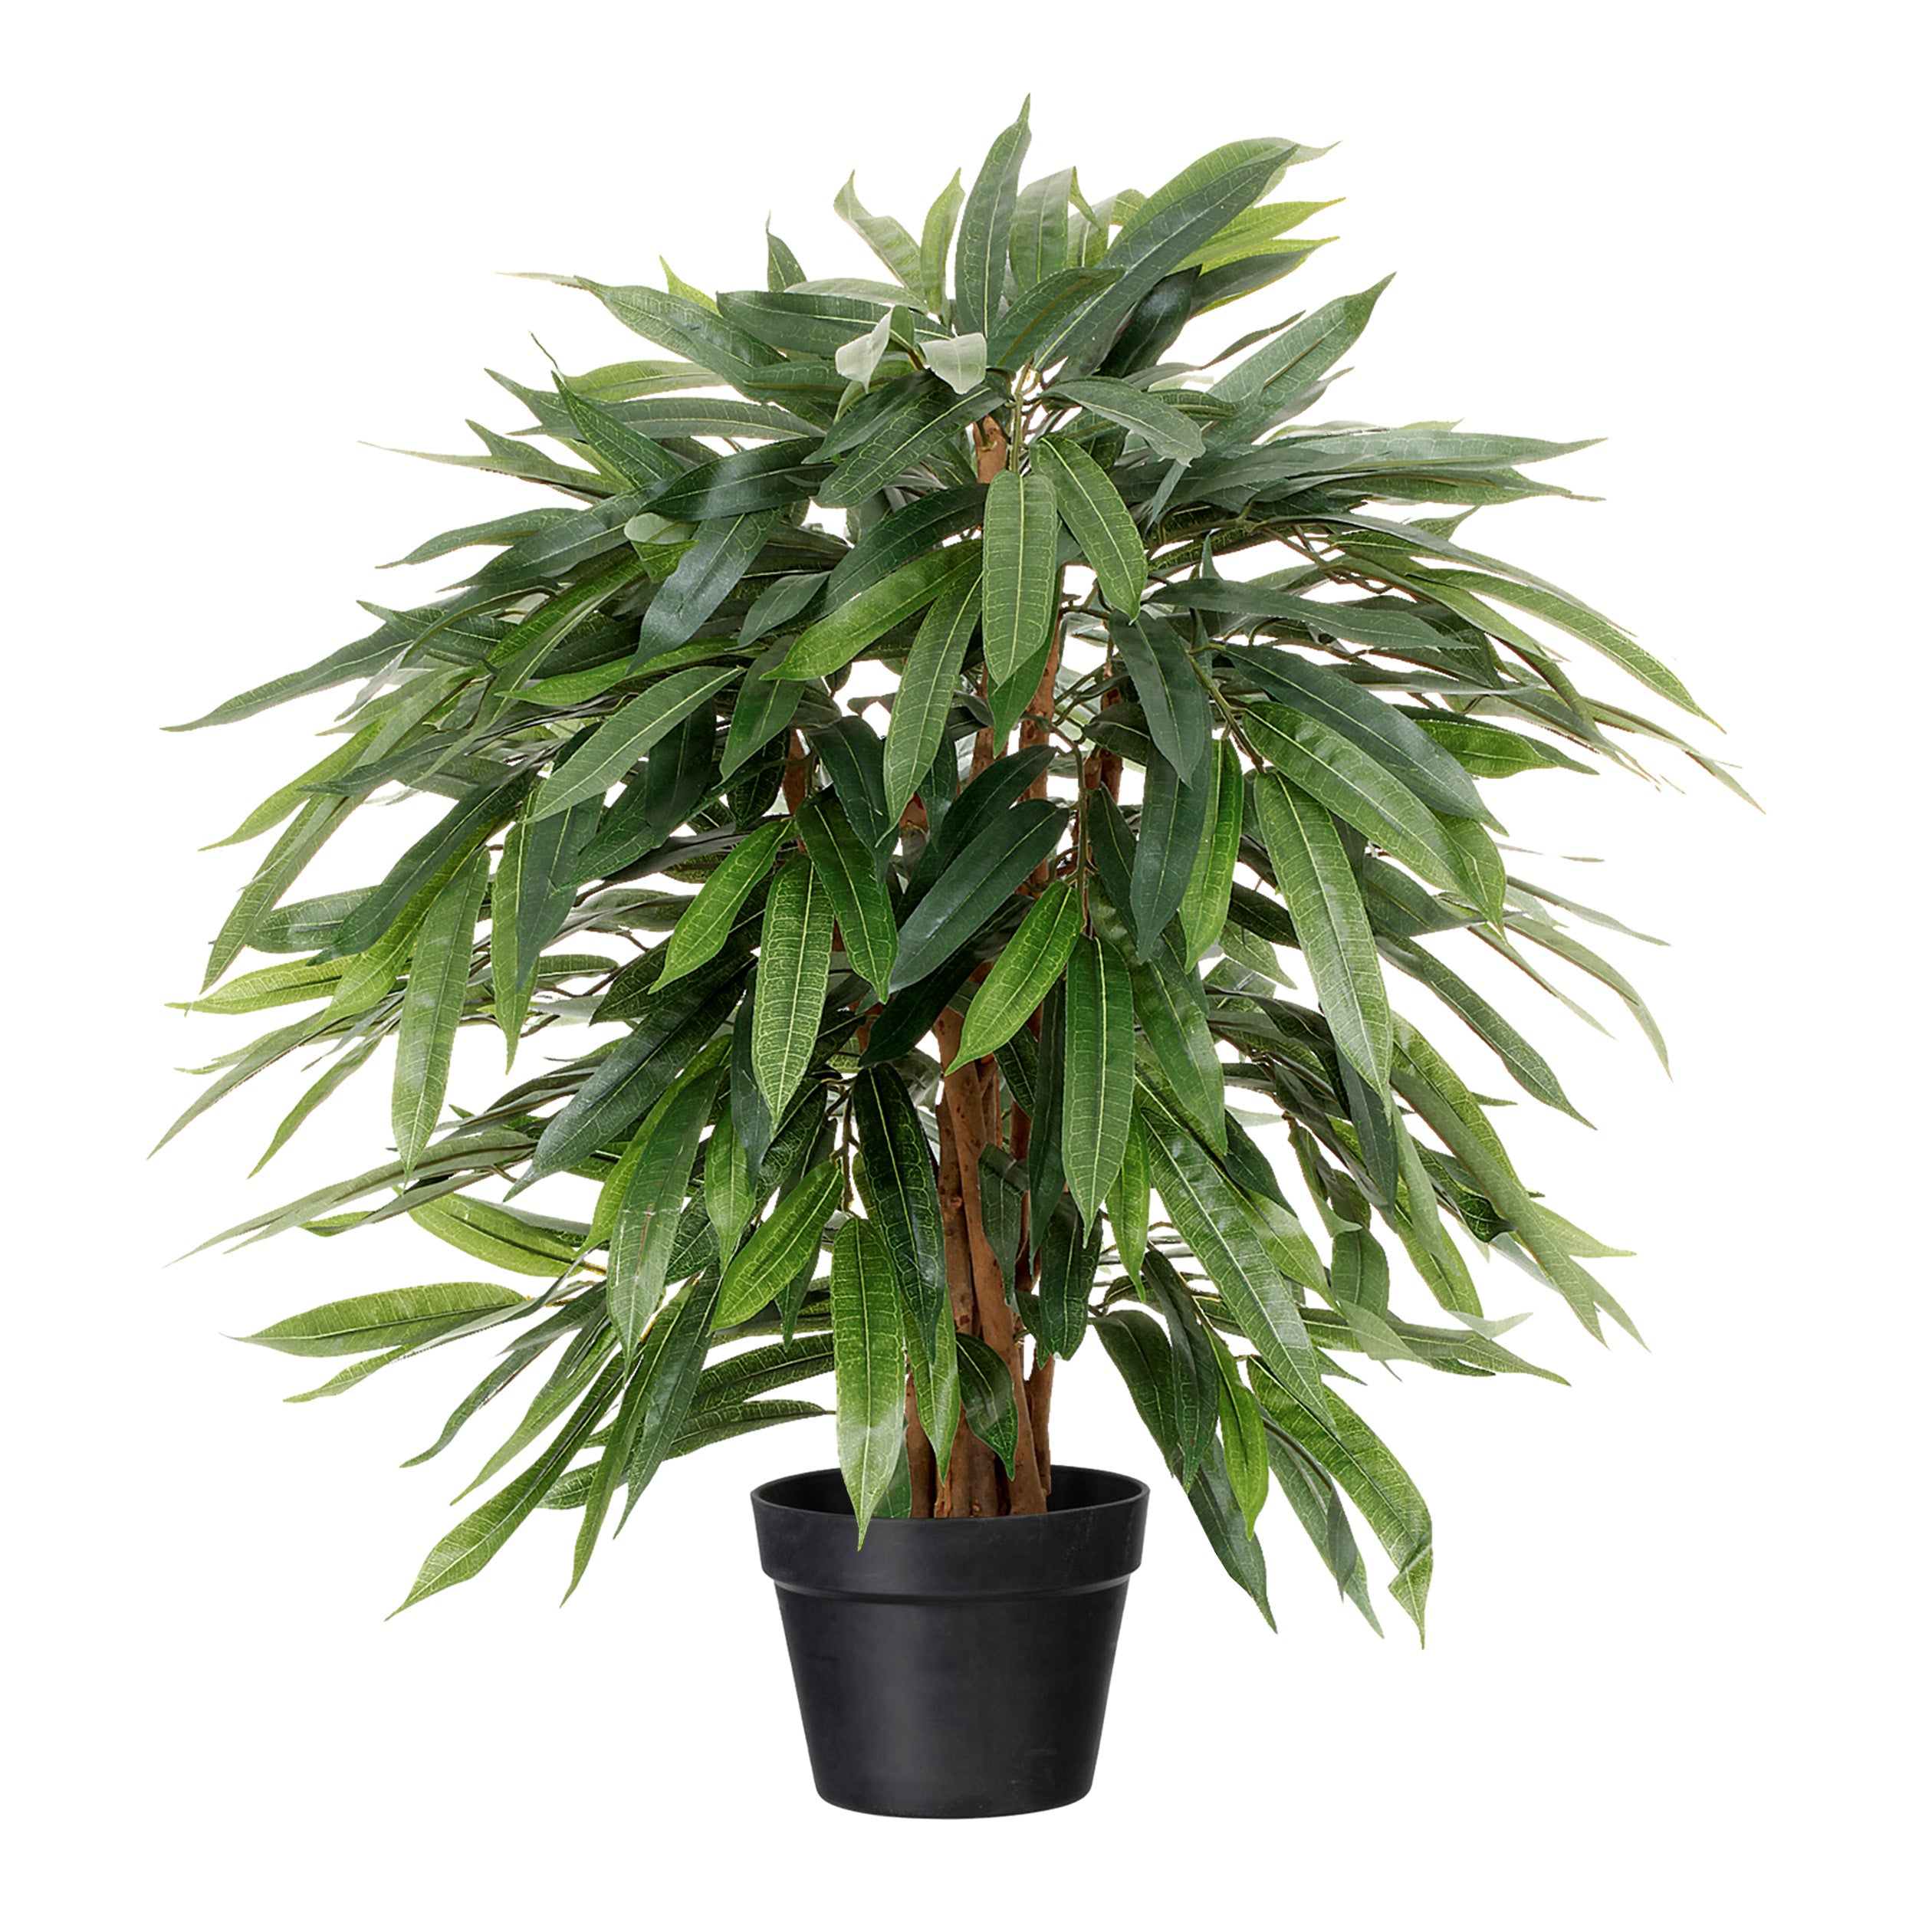 Kopu® Kunstplant Ficus Benjamina 80 cm in zwarte pot - Nepplant